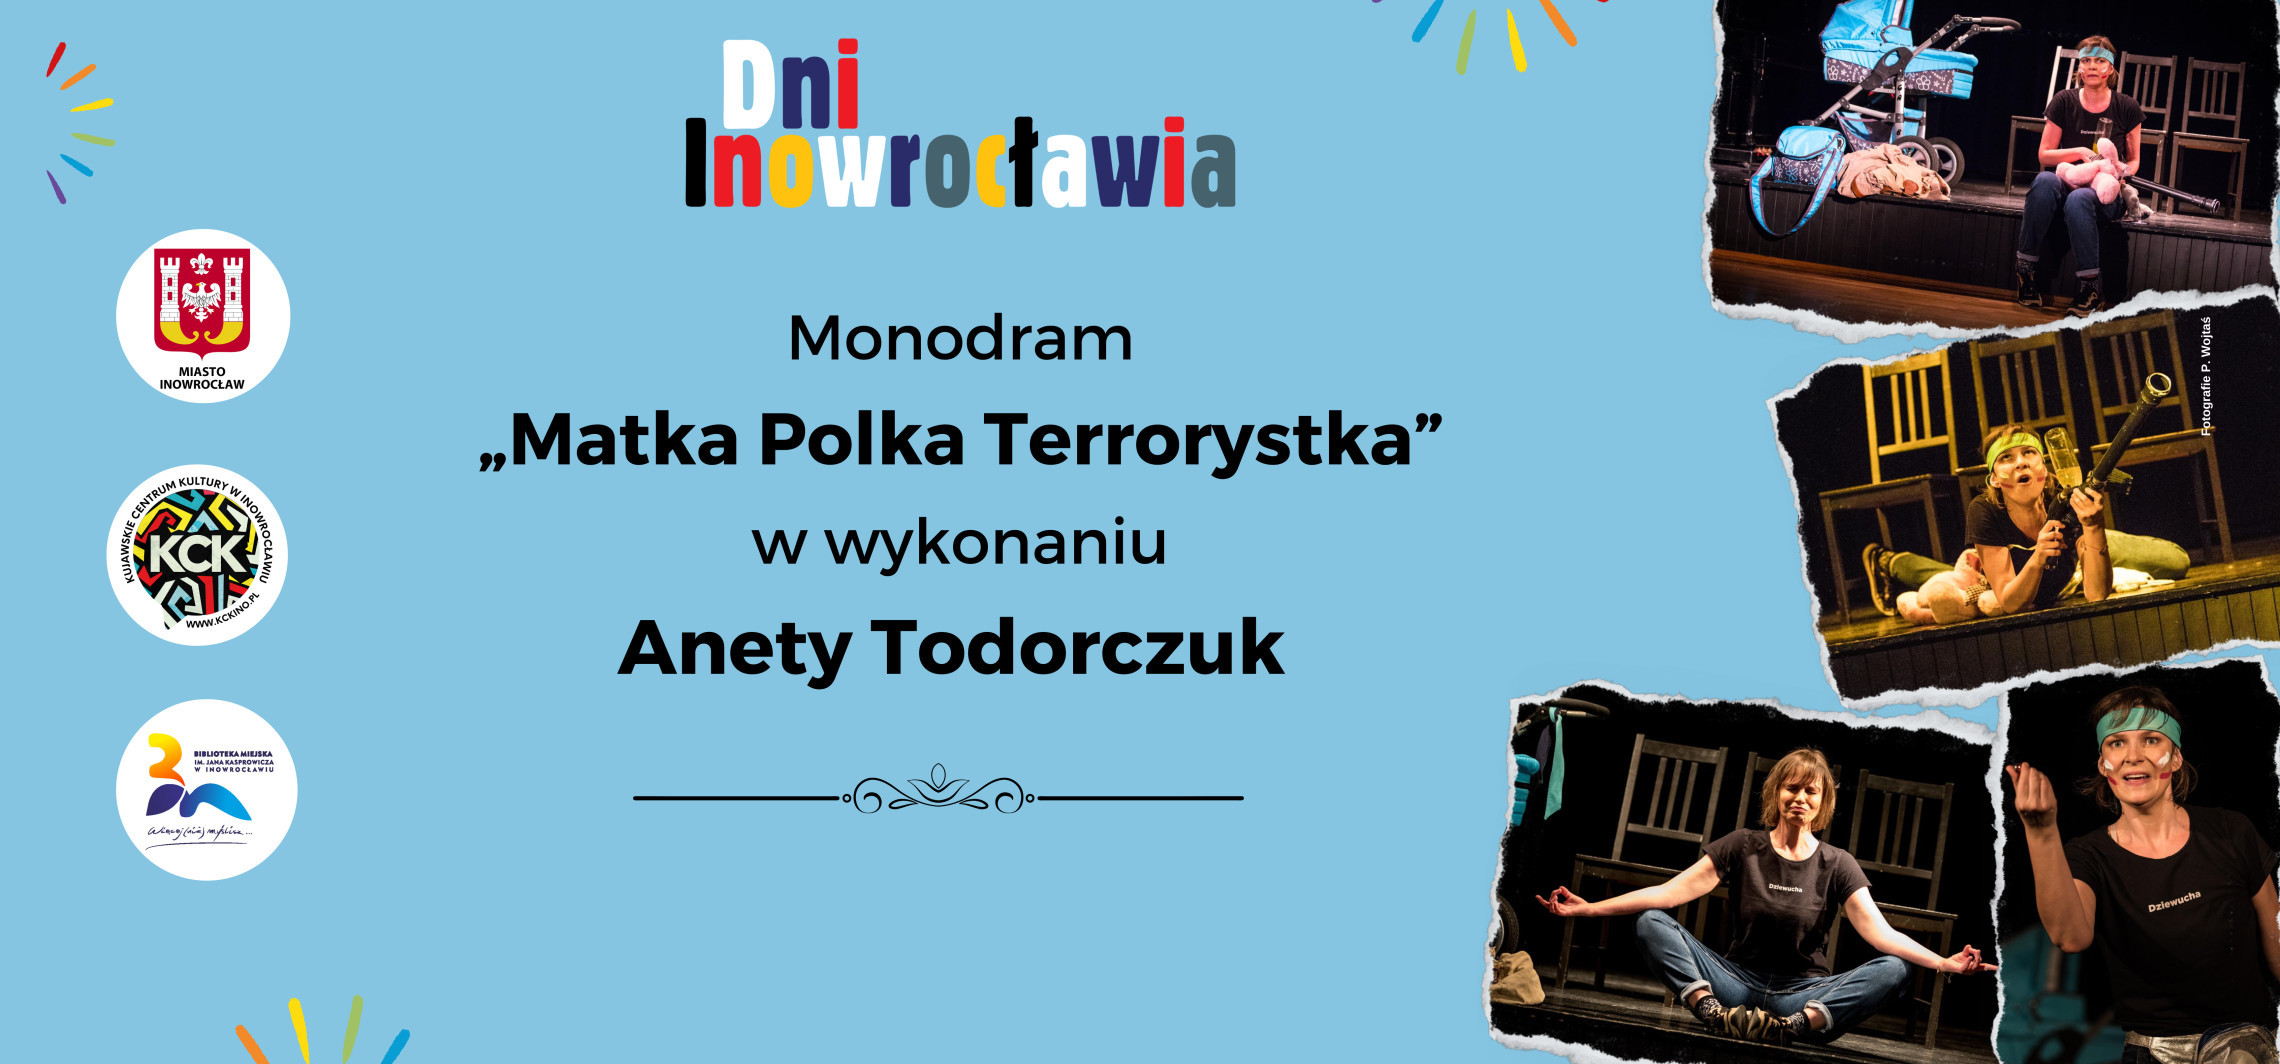 Inowrocław - Będzie okazja poznać Matkę Polkę Terrorystkę